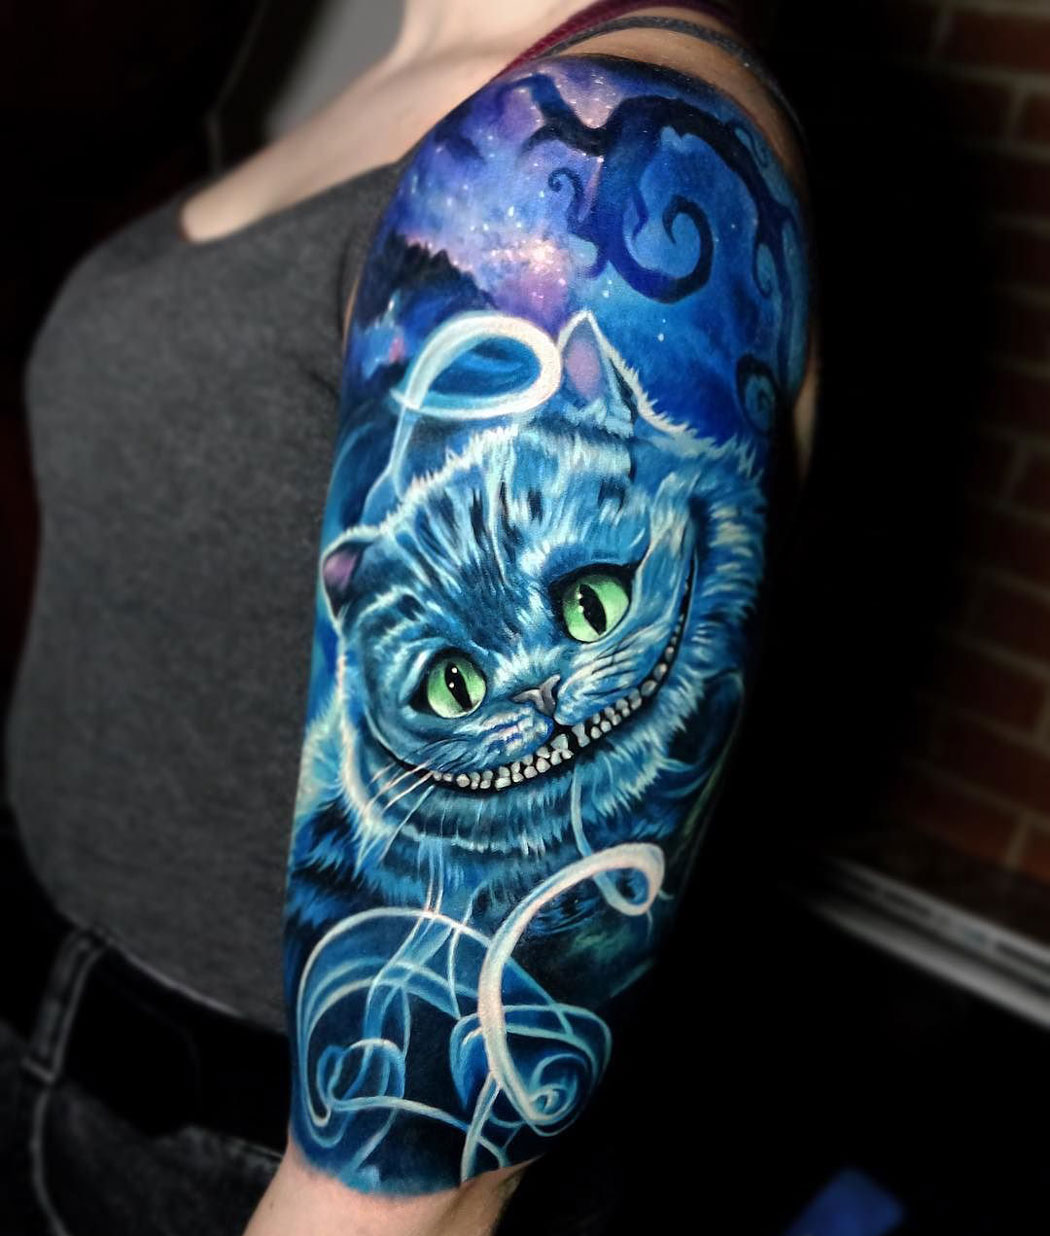 Cheshire cat girl's arm tattoo